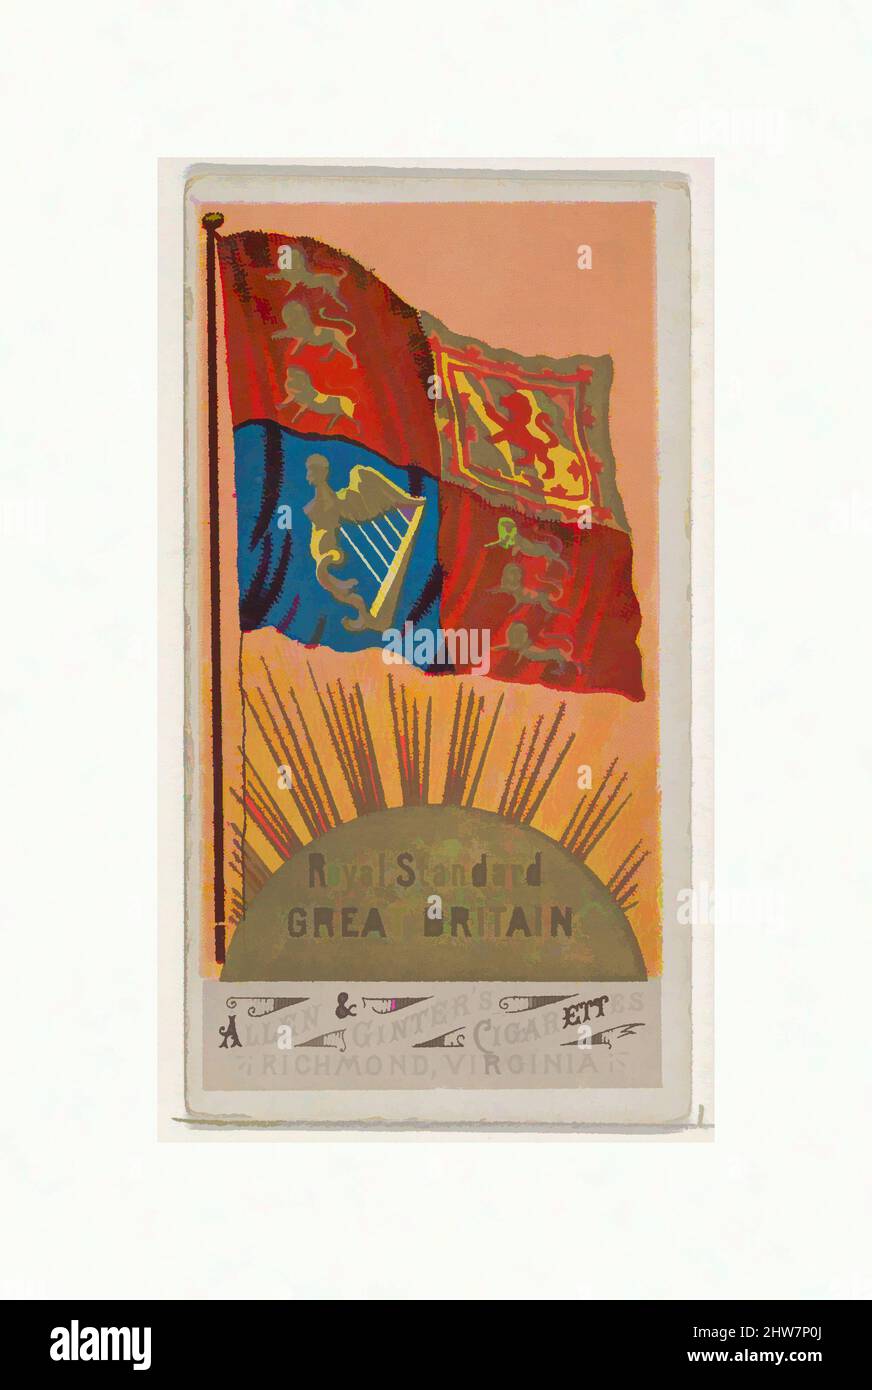 Art inspiré par Royal Standard, Grande-Bretagne, de Flags of All Nations, série 1 (N9) pour Allen & Ginter cigarettes Brands, 1887, lithographie couleur commerciale, feuille : 2 3/4 x 1 1/2 po. (7 x 3,8 cm), cartes professionnelles de l'ensemble, "drapeaux de toutes les nations", série 1 (N9), publié en 1887 dans a, oeuvres classiques modernisées par Artotop avec un peu de modernité. Formes, couleur et valeur, impact visuel accrocheur sur l'art émotions par la liberté d'œuvres d'art d'une manière contemporaine. Un message intemporel qui cherche une nouvelle direction créative. Artistes qui se tournent vers le support numérique et créent le NFT Artotop Banque D'Images